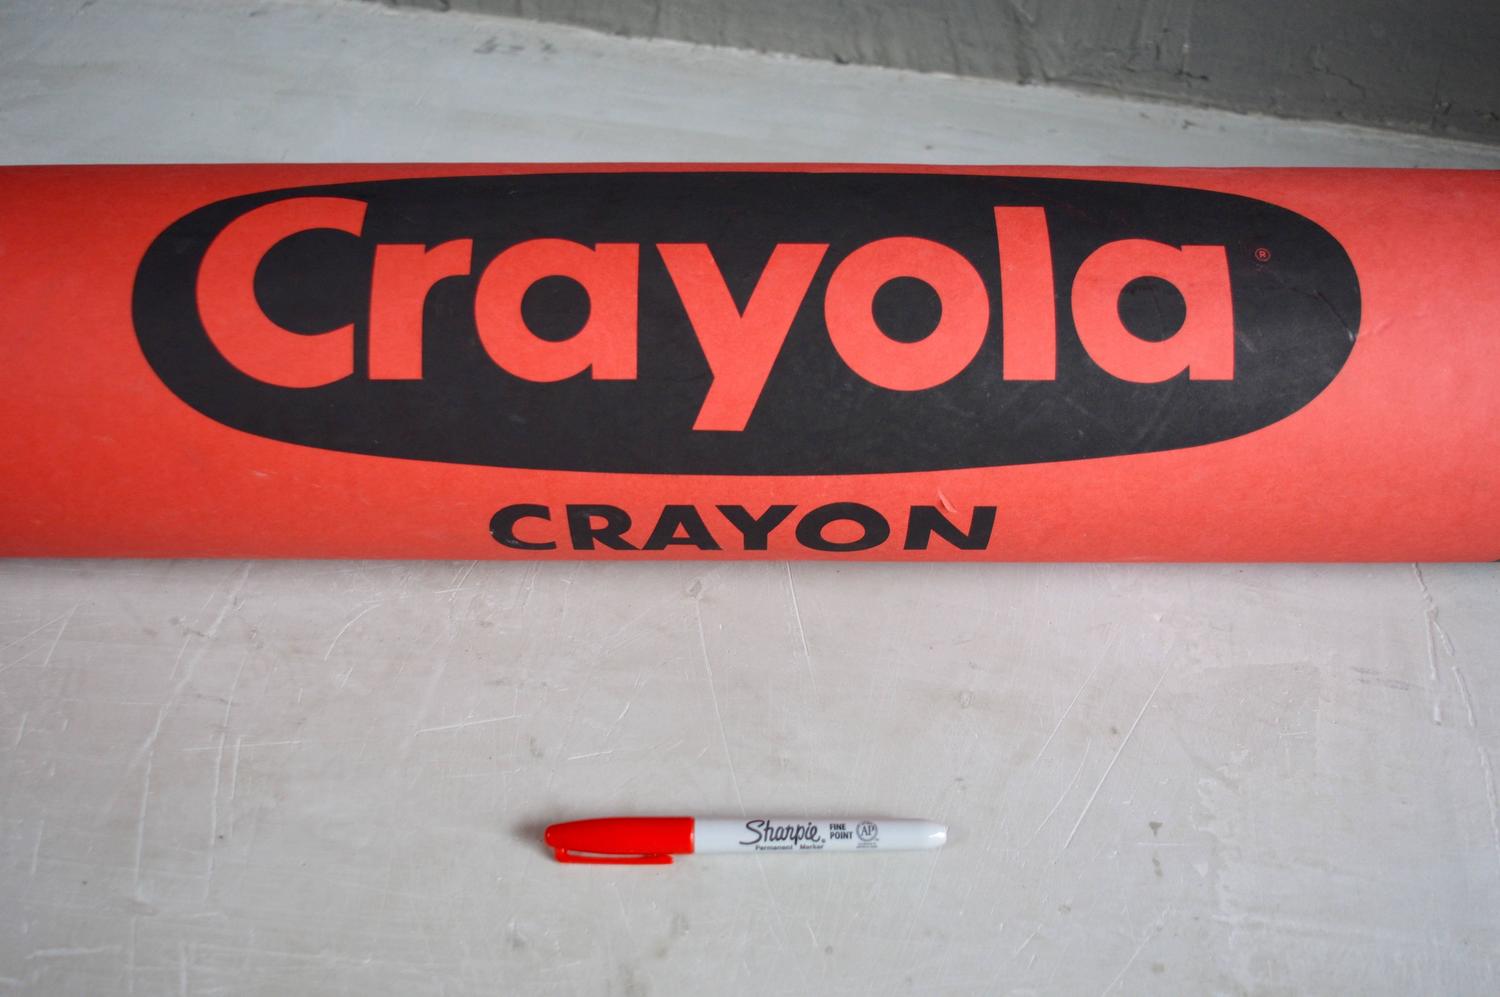 Monumental Red Crayola Crayon